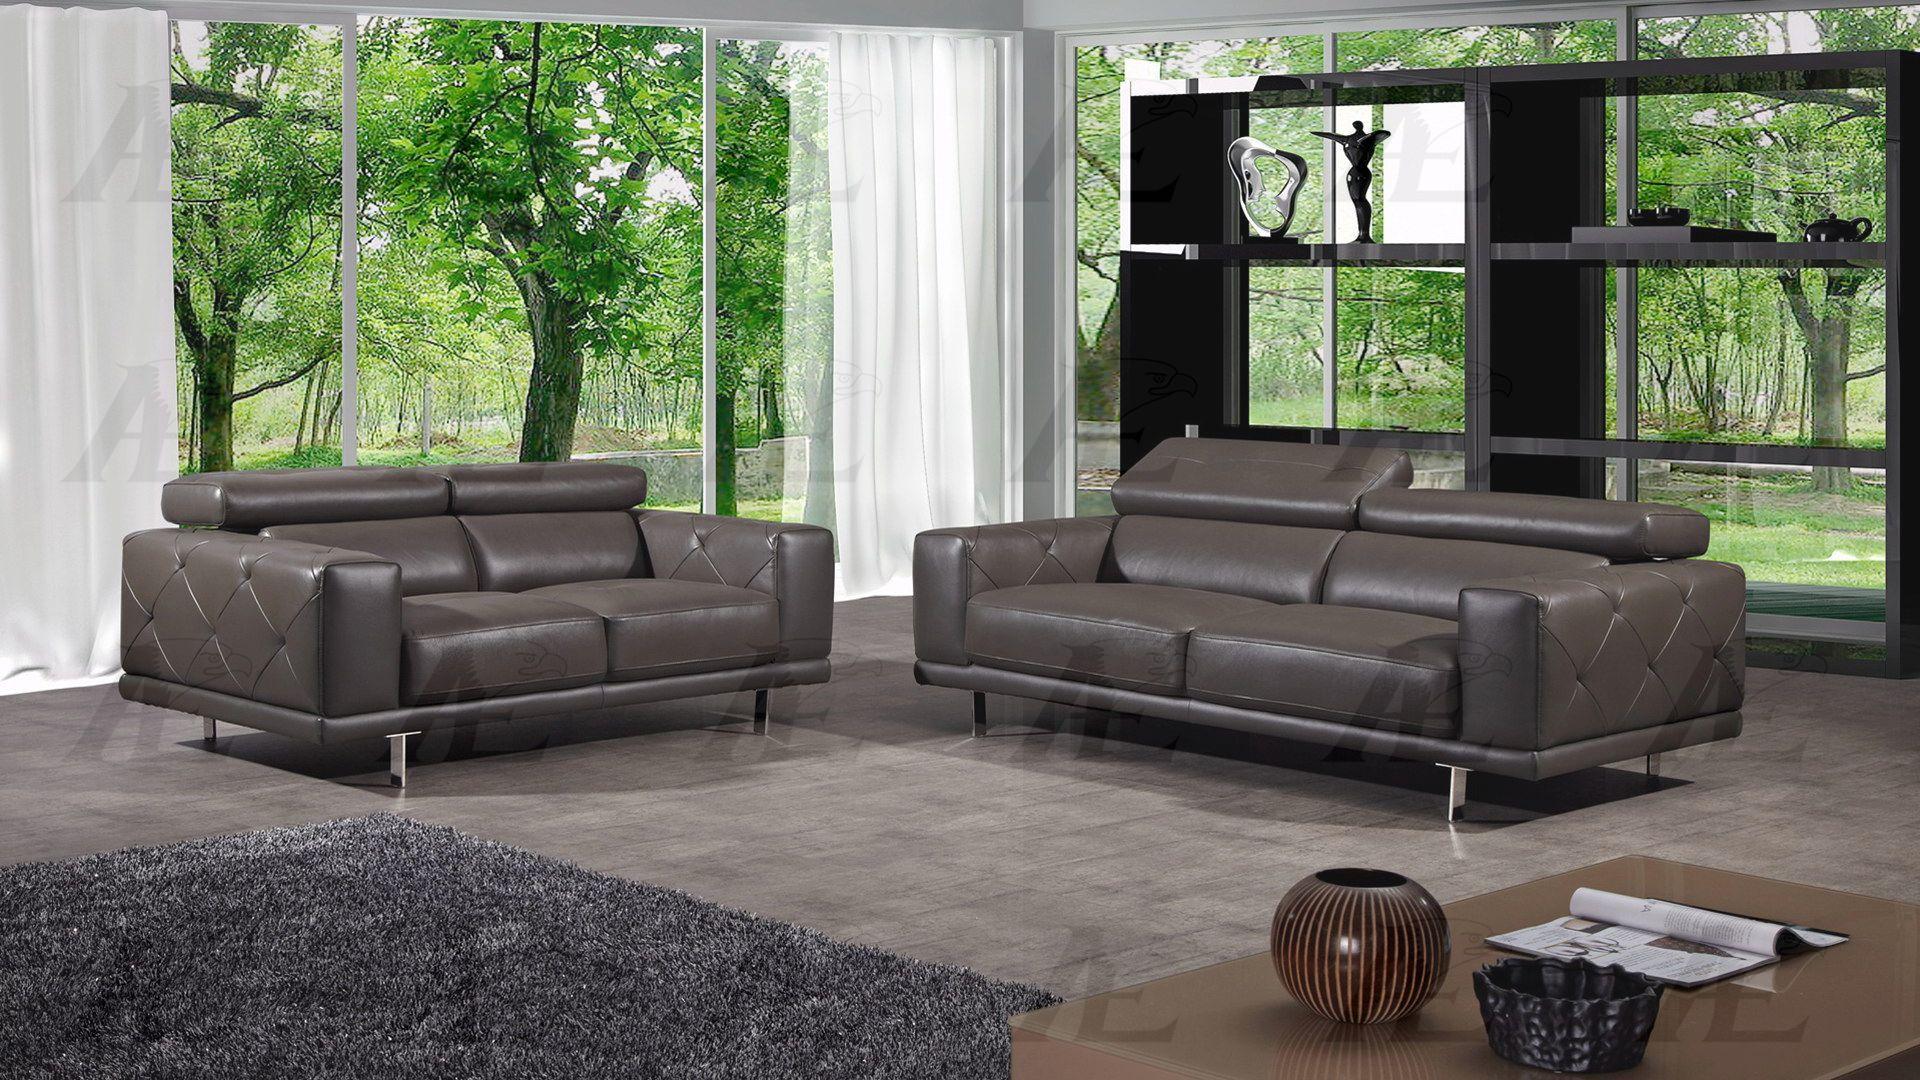 

    
American Eagle Furniture EK039-TPE Taupe Tufted Sofa Loveseat Set Italian Leather 2Pcs
